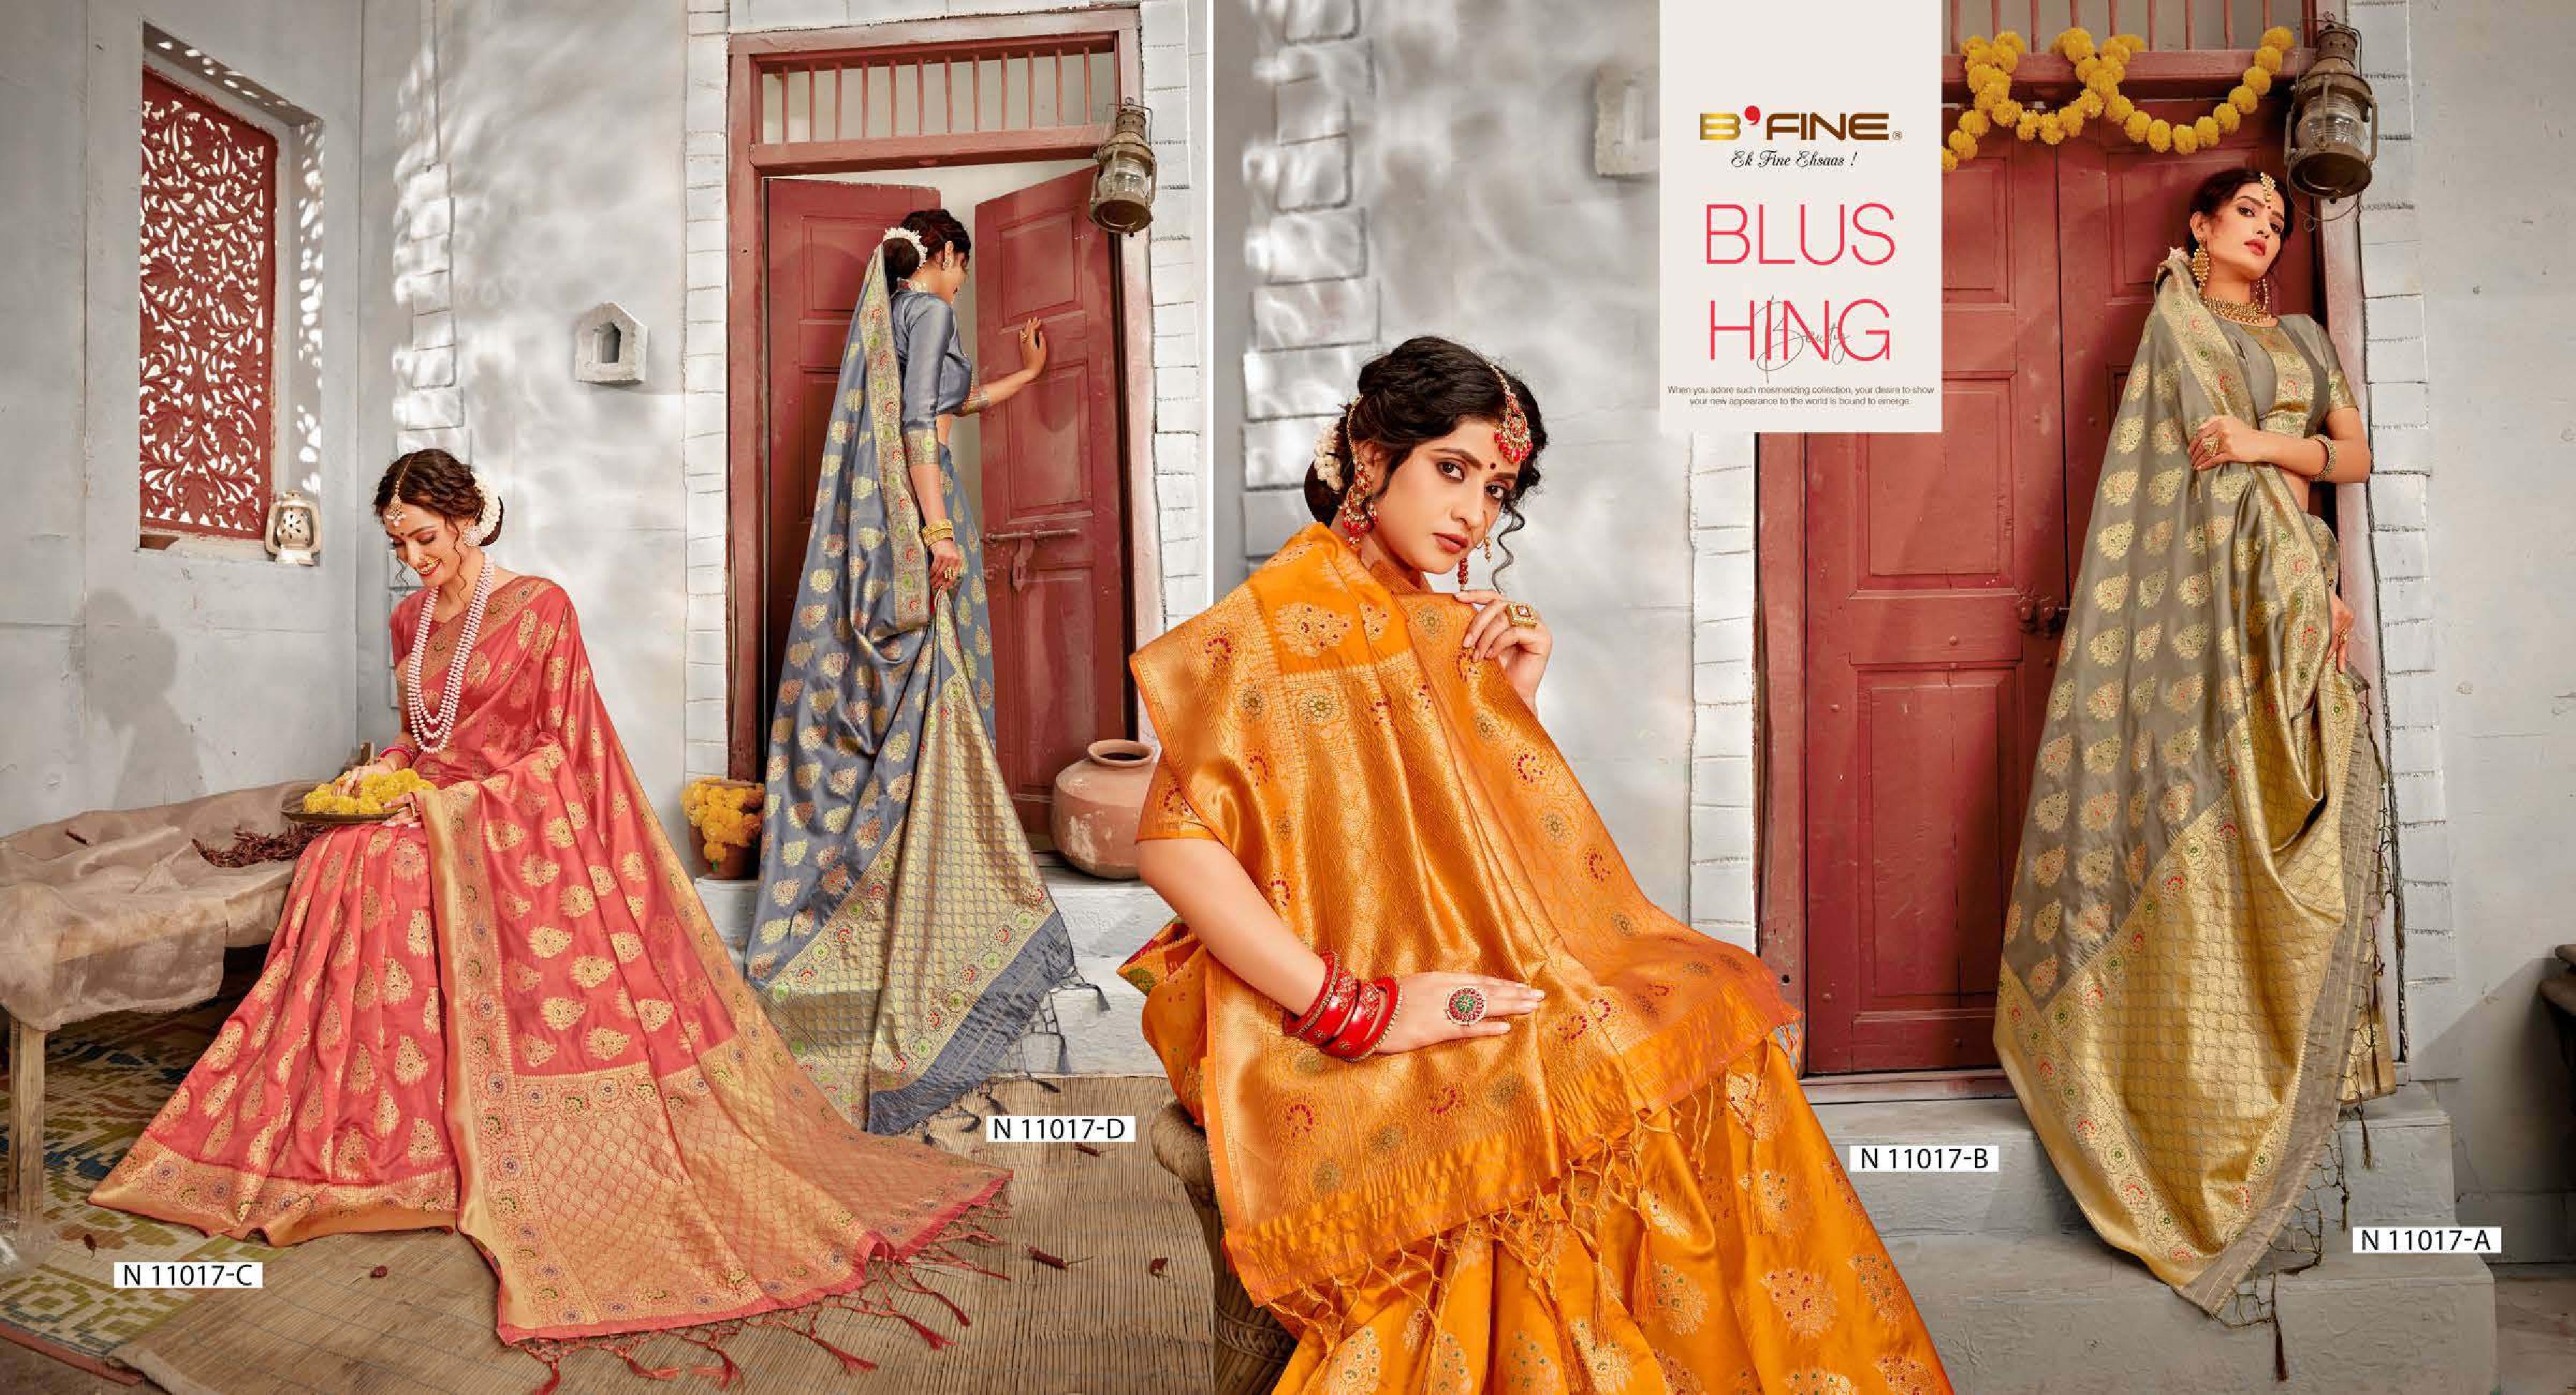 b fine talking threads silk regal look saree catalog